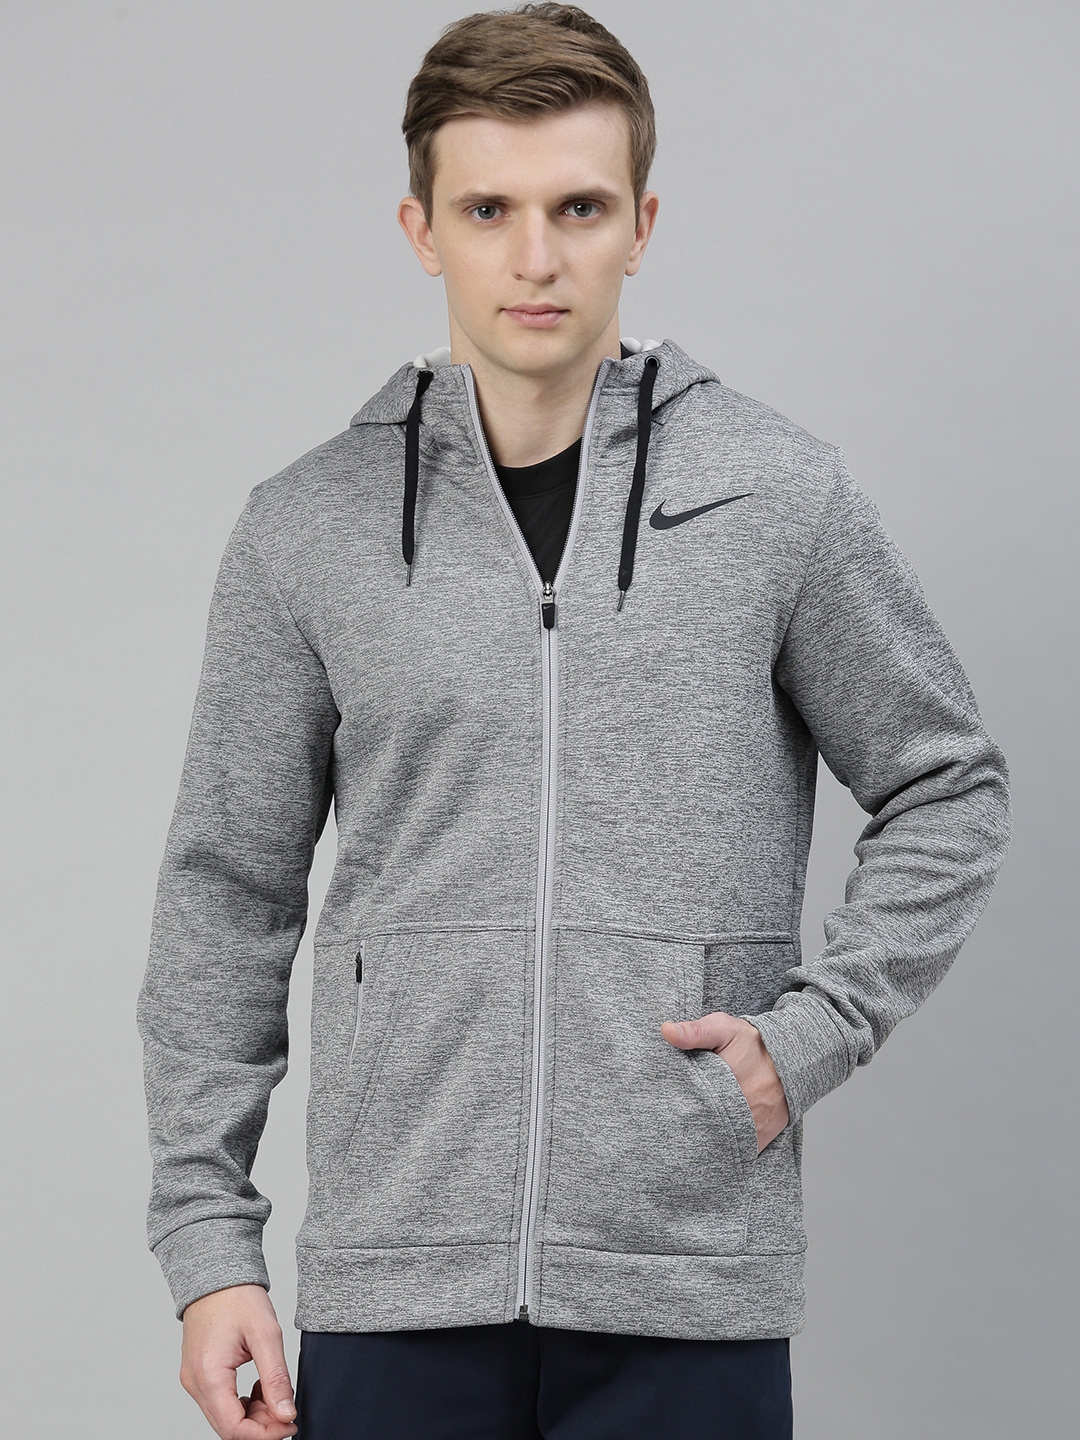 Buy Nike Men Grey Melange Solid Sporty Jacket - Jackets for Men ...